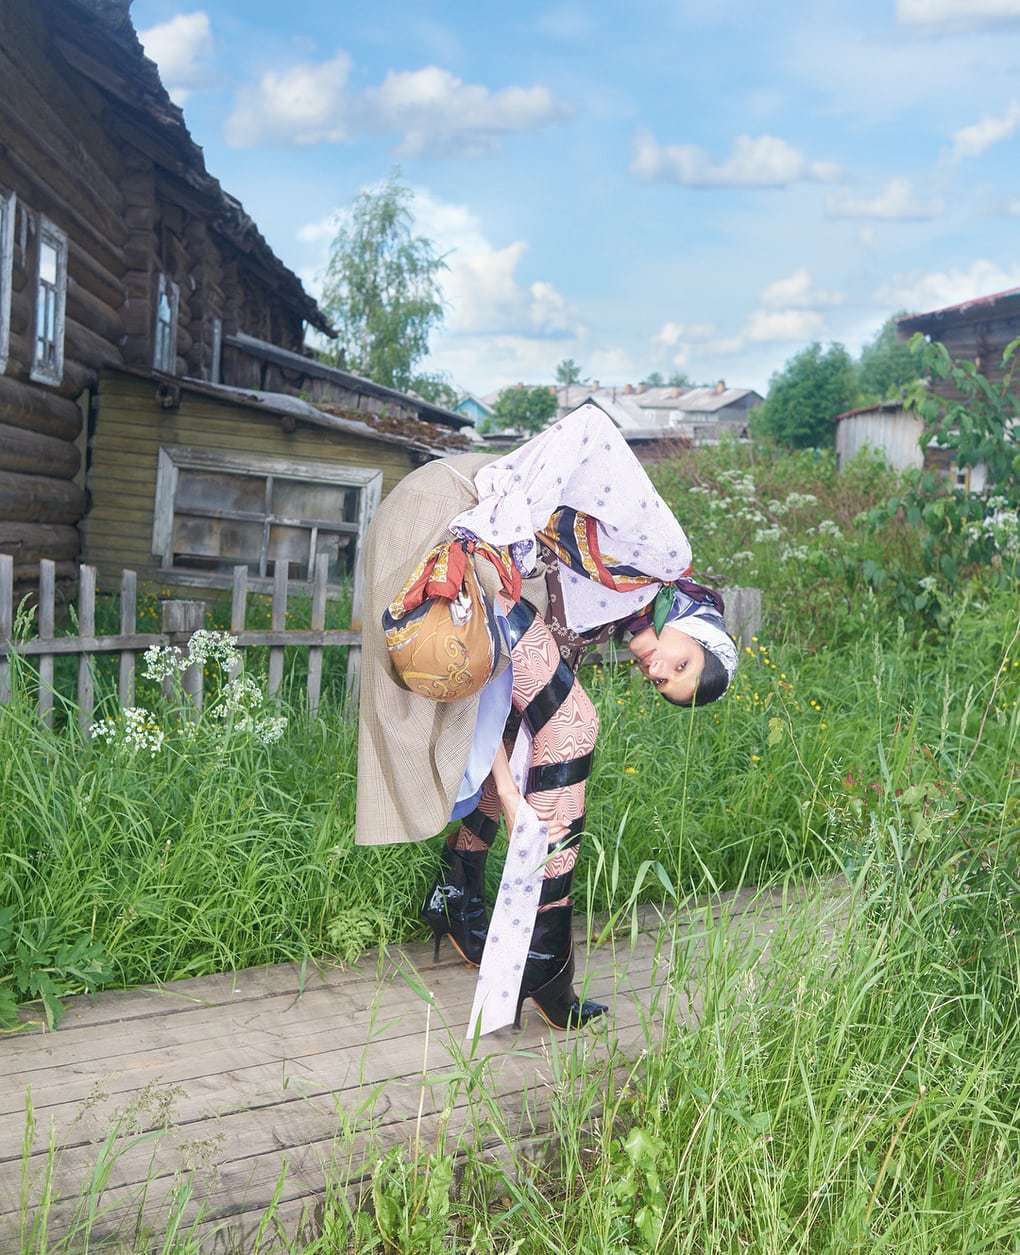 Vogue снял усатых женщин в русской деревне, обиженные жители отомстили